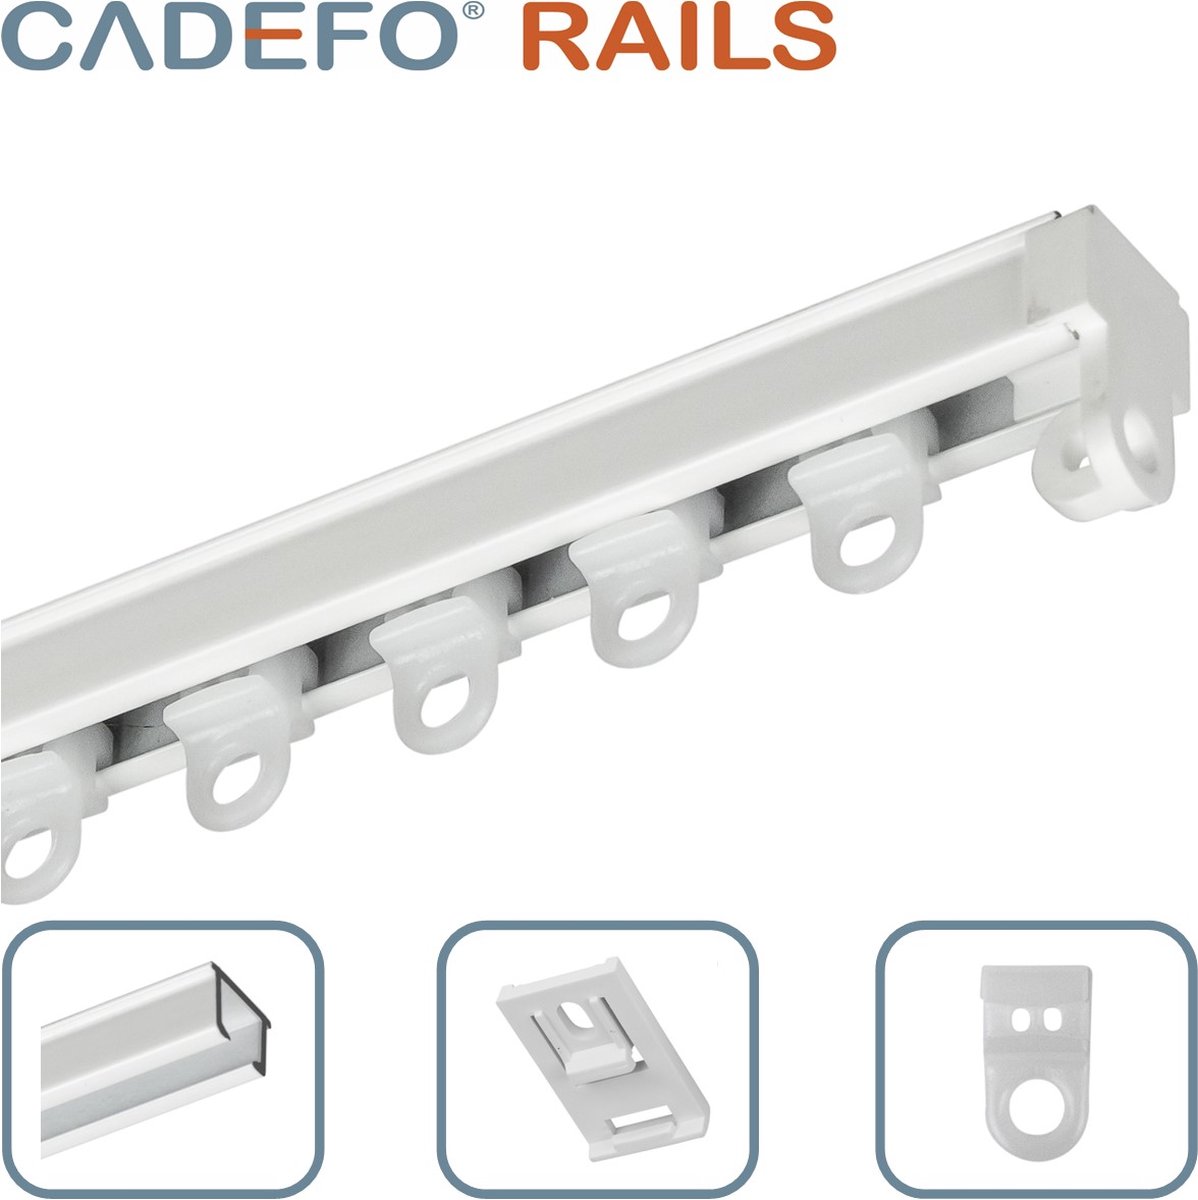 CADEFO RAILS (301 - 350 cm) Gordijnrails - Compleet op maat! - UIT 1 STUK - Leverbaar tot 6 meter - Plafondbevestiging - Lengte 319 cm